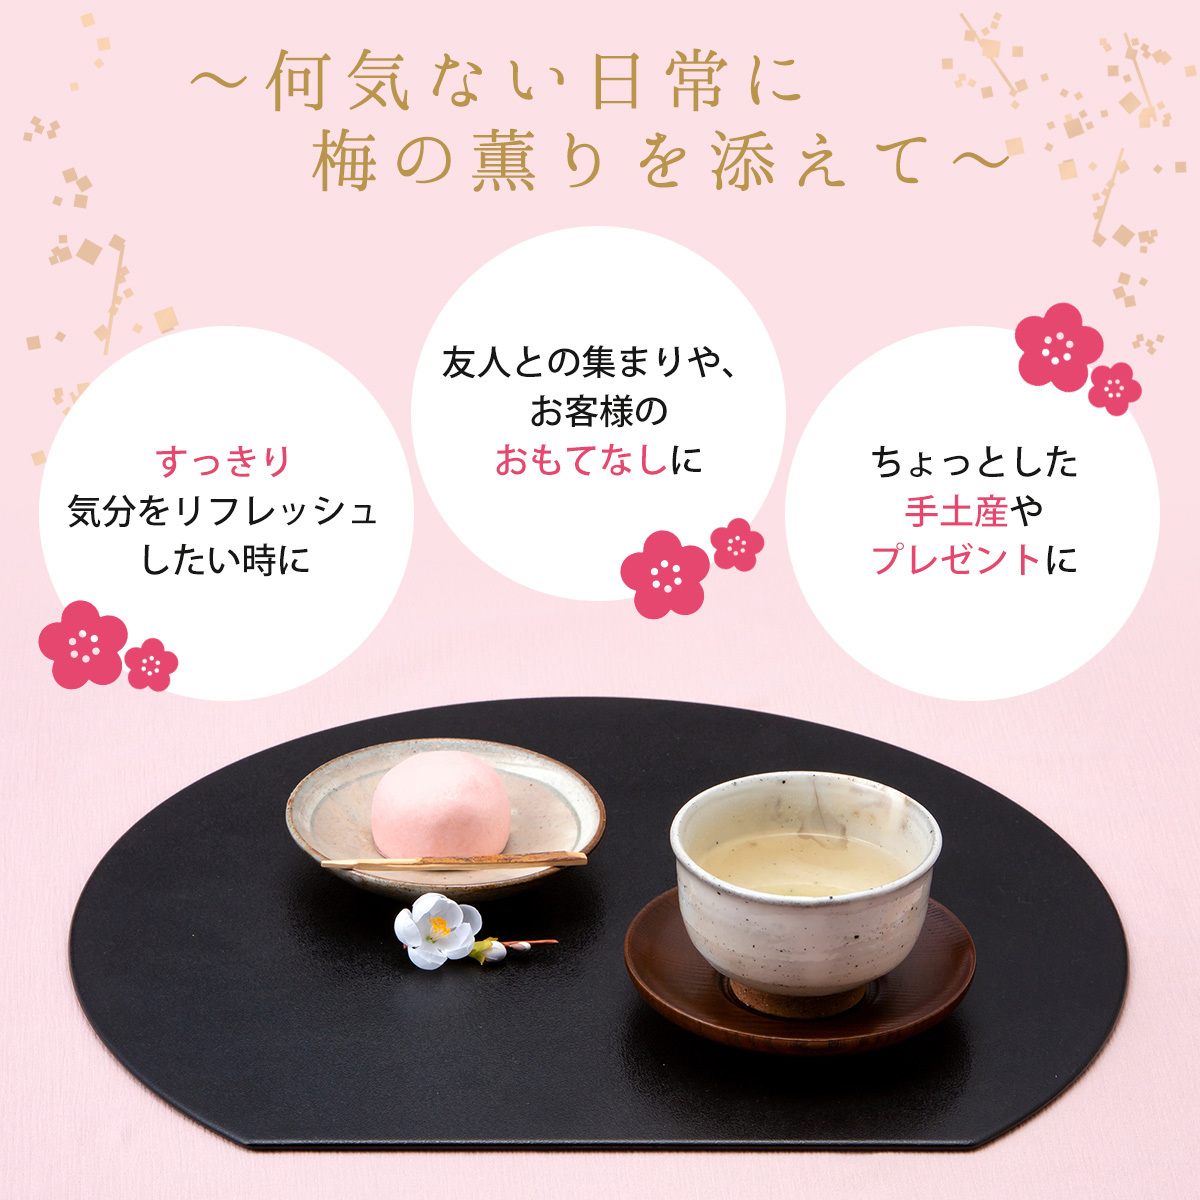 梅昆布茶 24包入 48g(2g×24包) スティックタイプ 昆布茶 梅こんぶ茶 